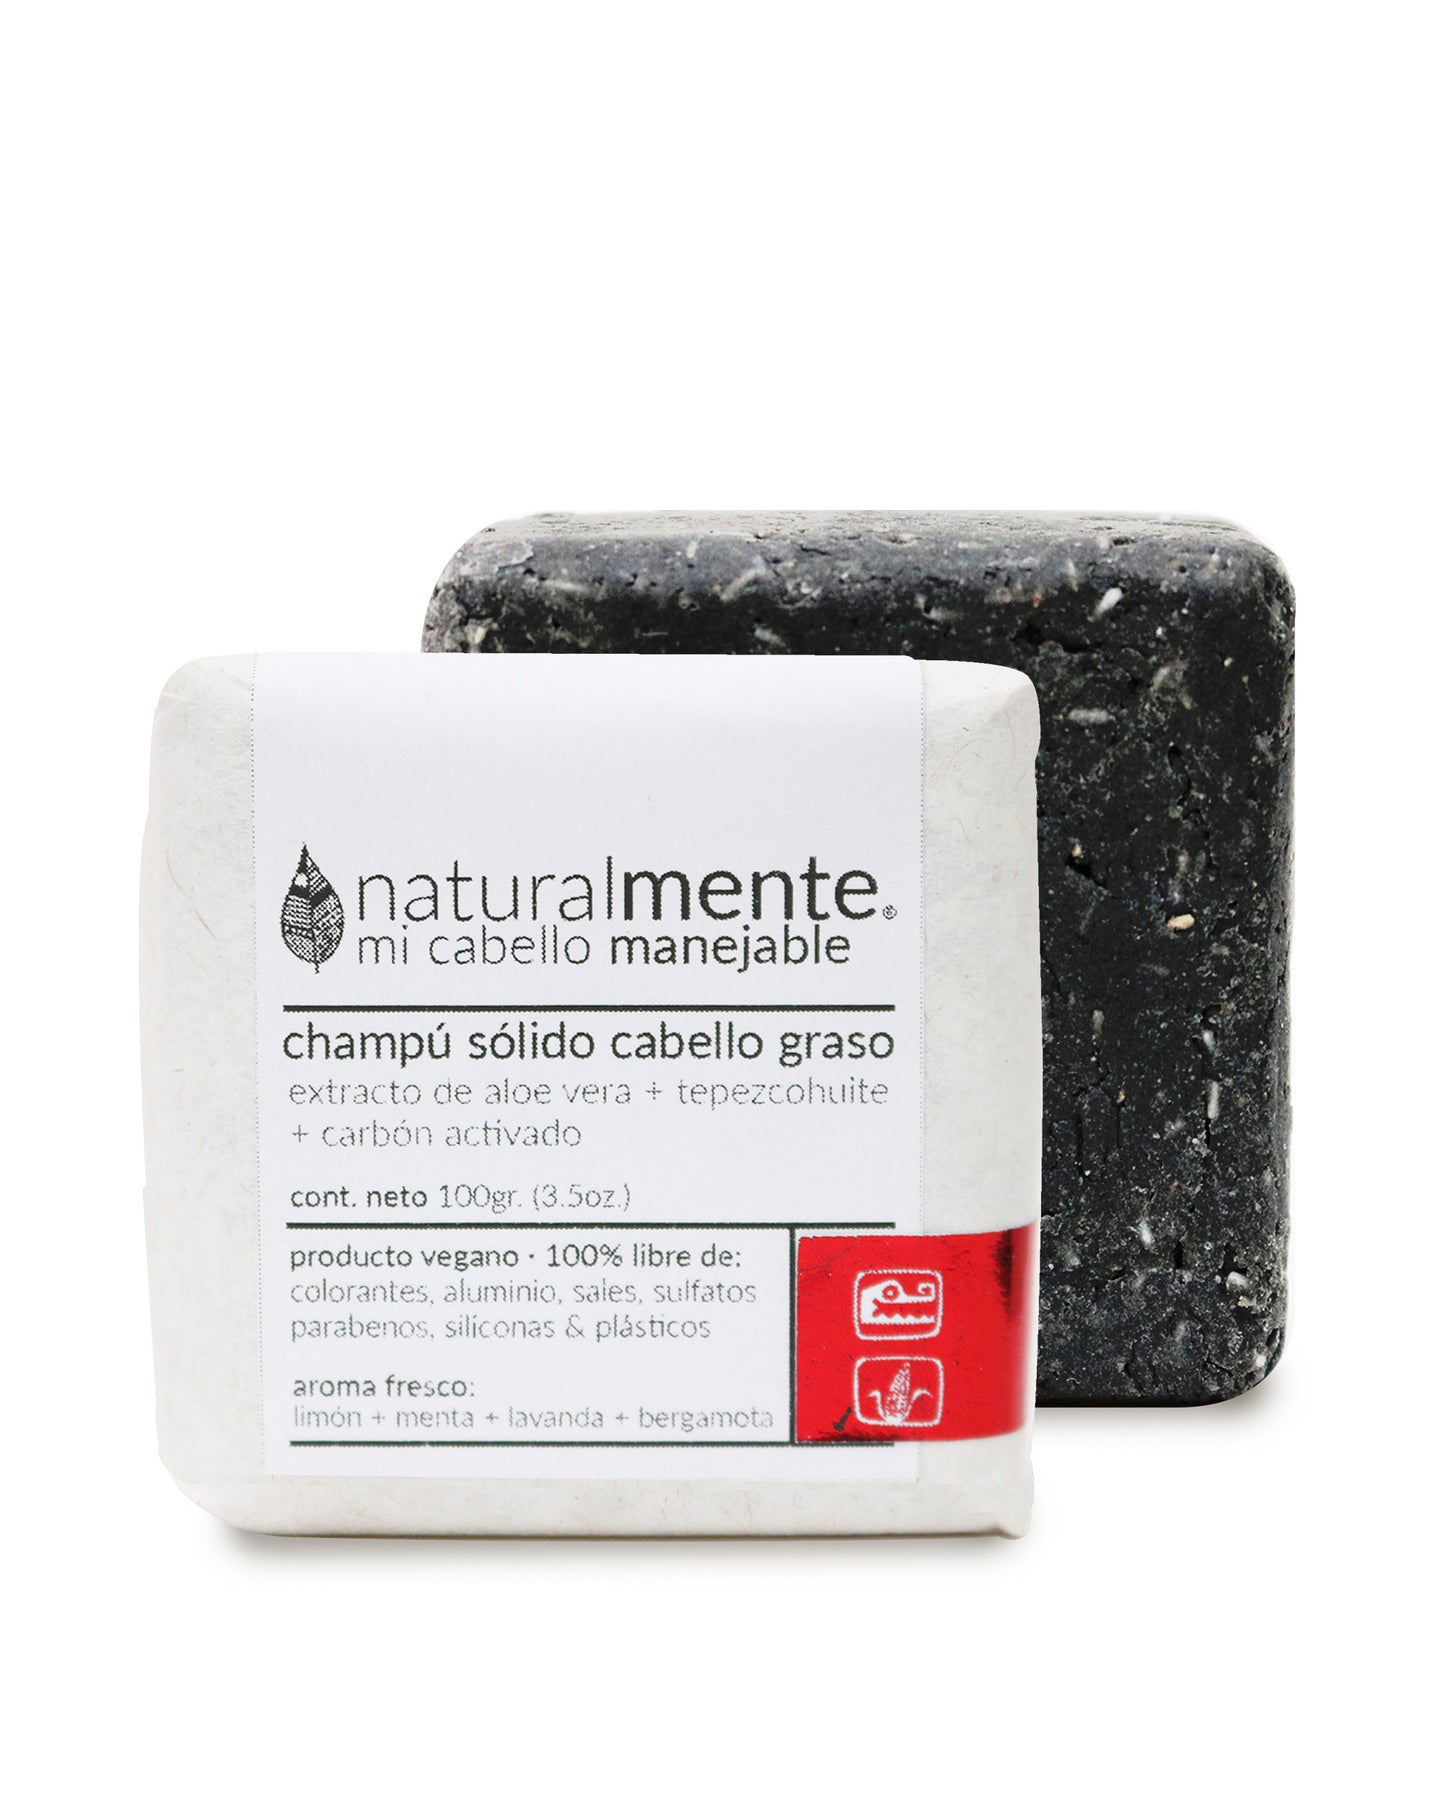 NATURALMENTE Champú Sólido Cabello Graso - Aloe Vera + Tepezcohuite + Carbón Activo - Aroma Fresco 100 gr.